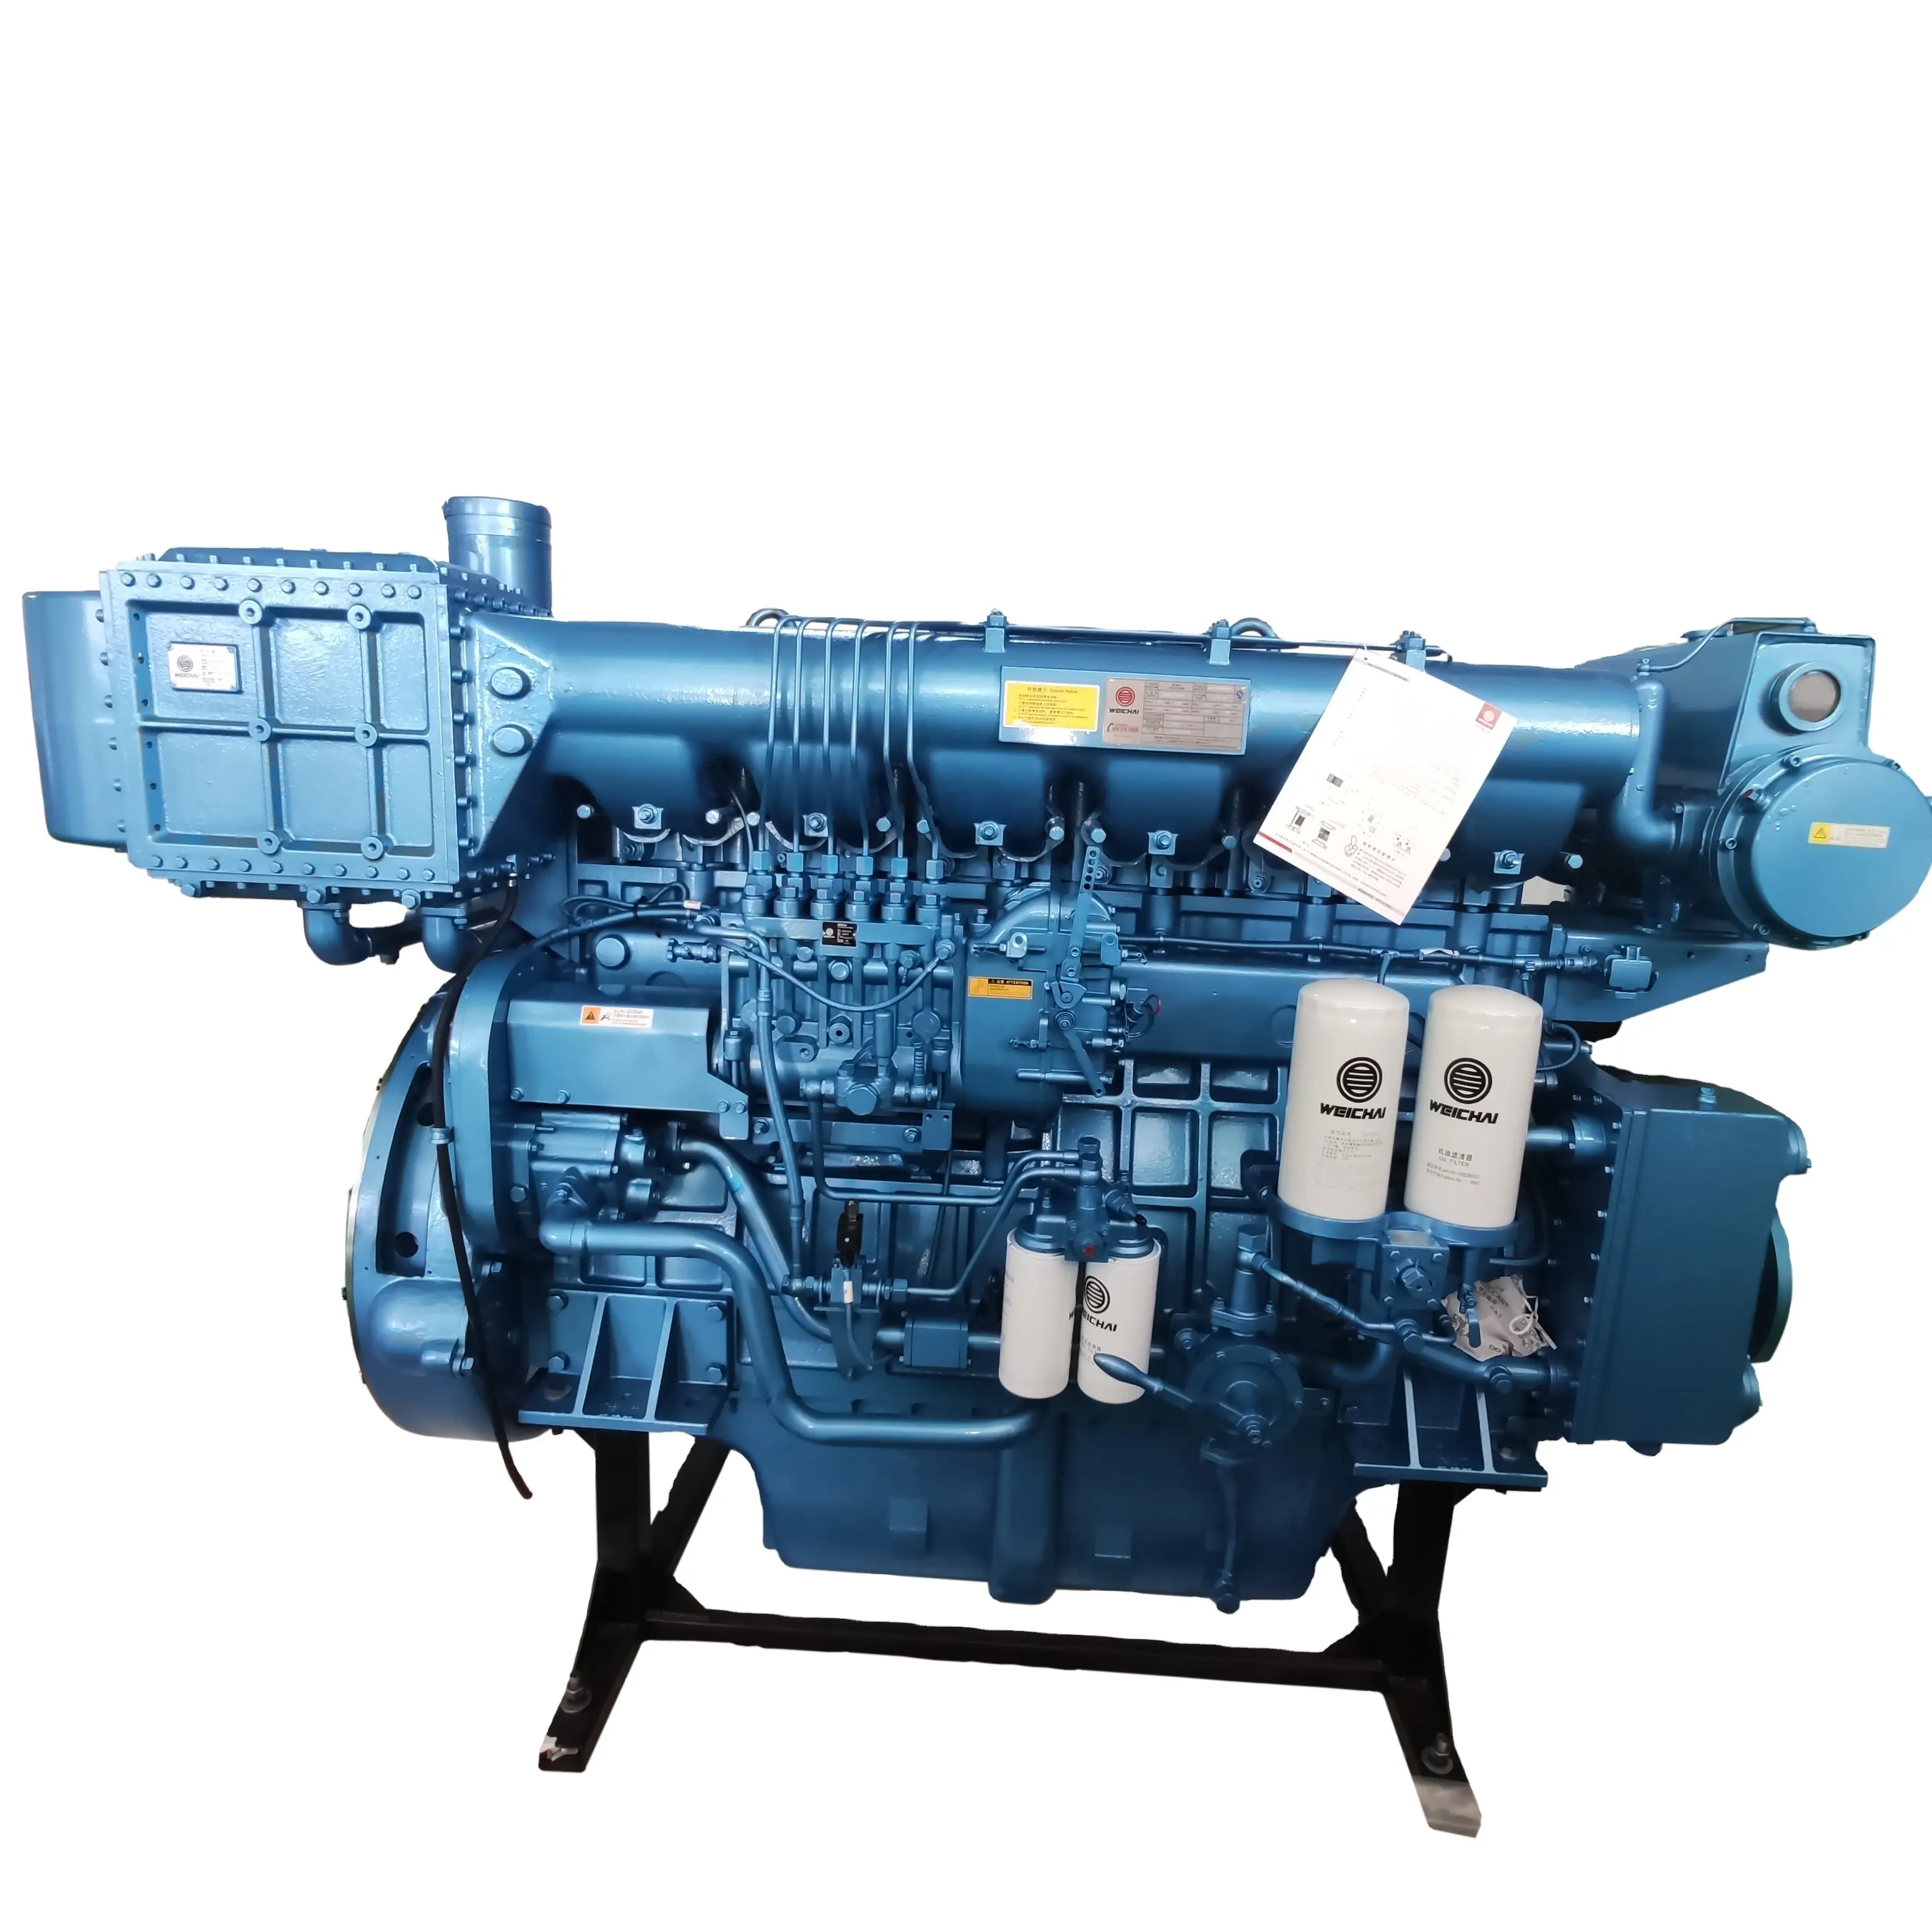 6 цилиндров X6170ZC580-3 Weichai лодочный дизельный двигатель 580 л.с./1350 об./мин., морской двигатель с водяным охлаждением для рыболовного судна